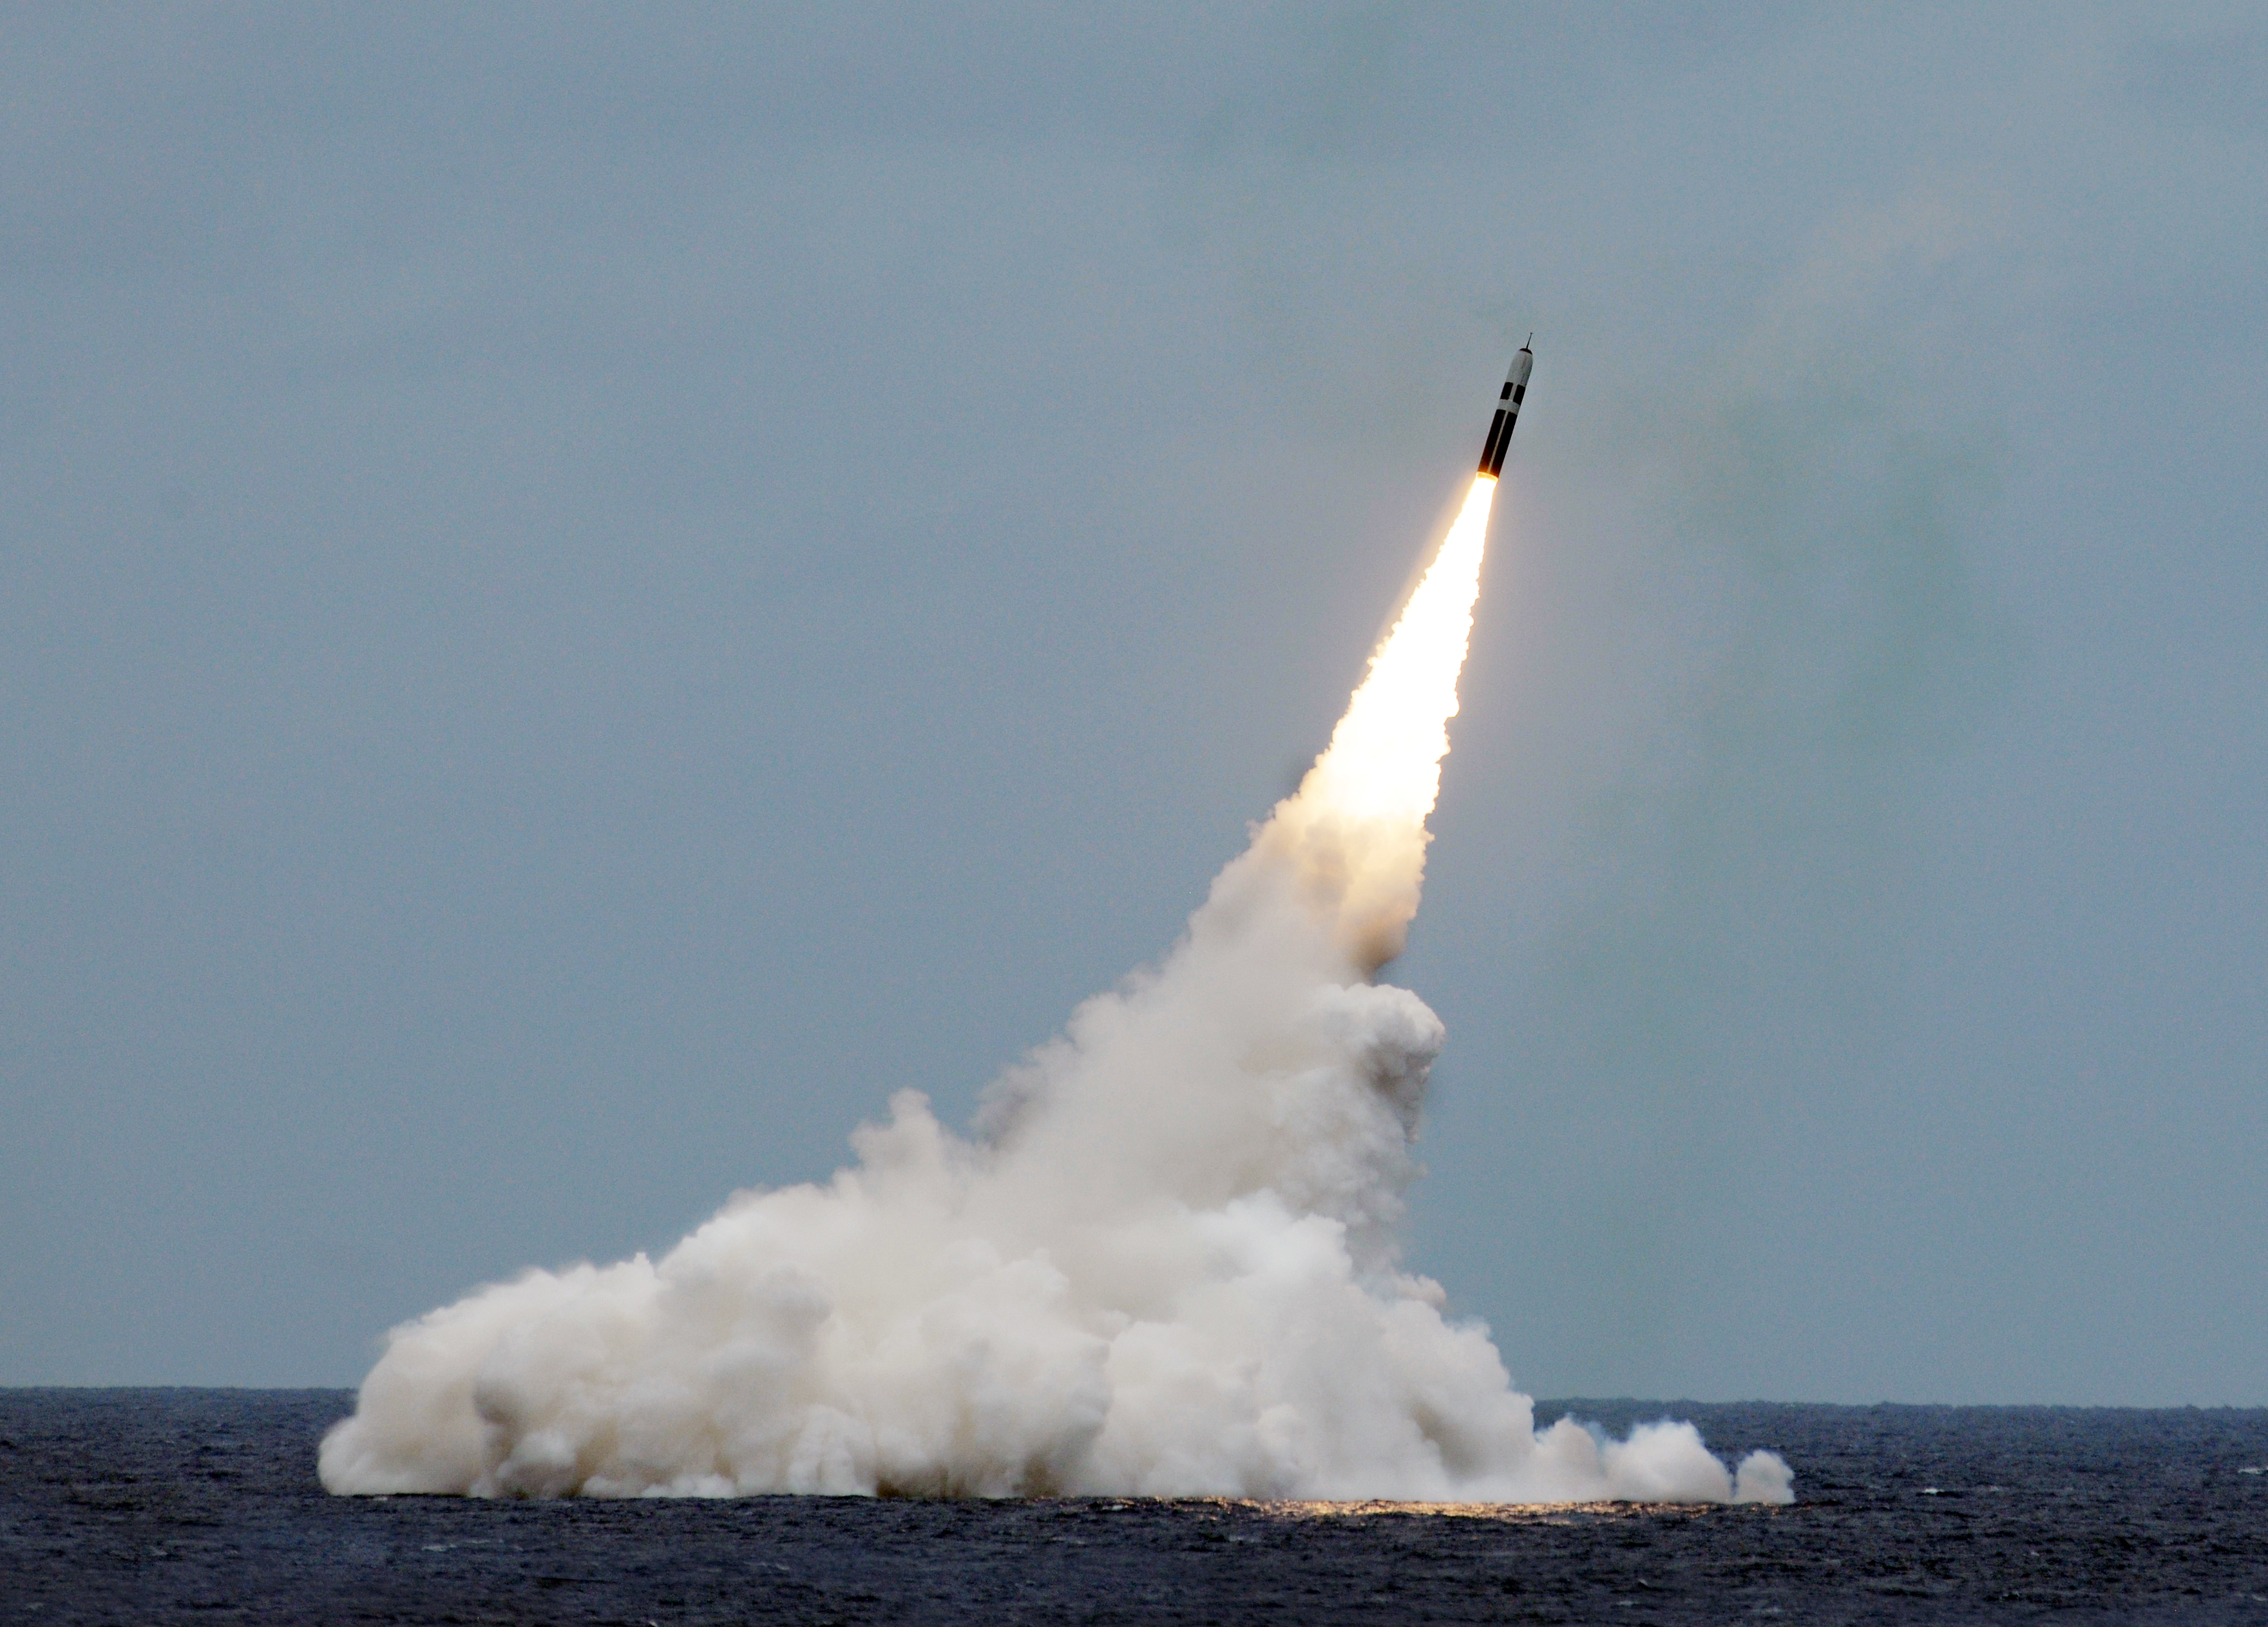 Пуск МБР морского базирования Trident II D5 с борта стратегической подводной лодки USS Maryland (SSBN 738), типа Ohio, фото сделано 31 августа 2016 года в Атлантическом океане. Это был 161-й подряд успешный пуск ракет Trident II D5